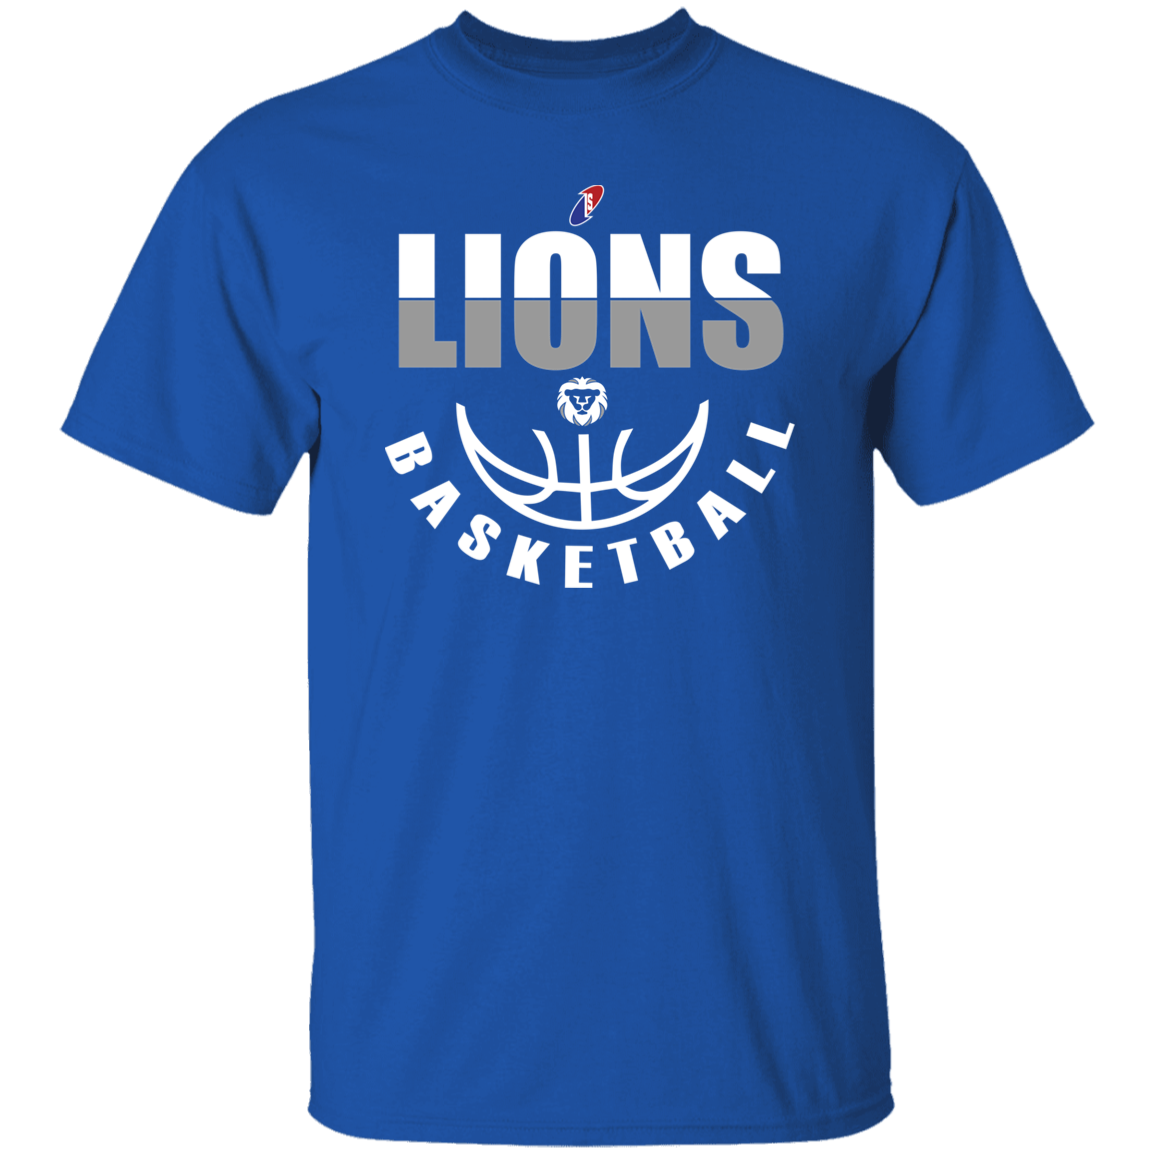 Lions Unisex T-Shirt